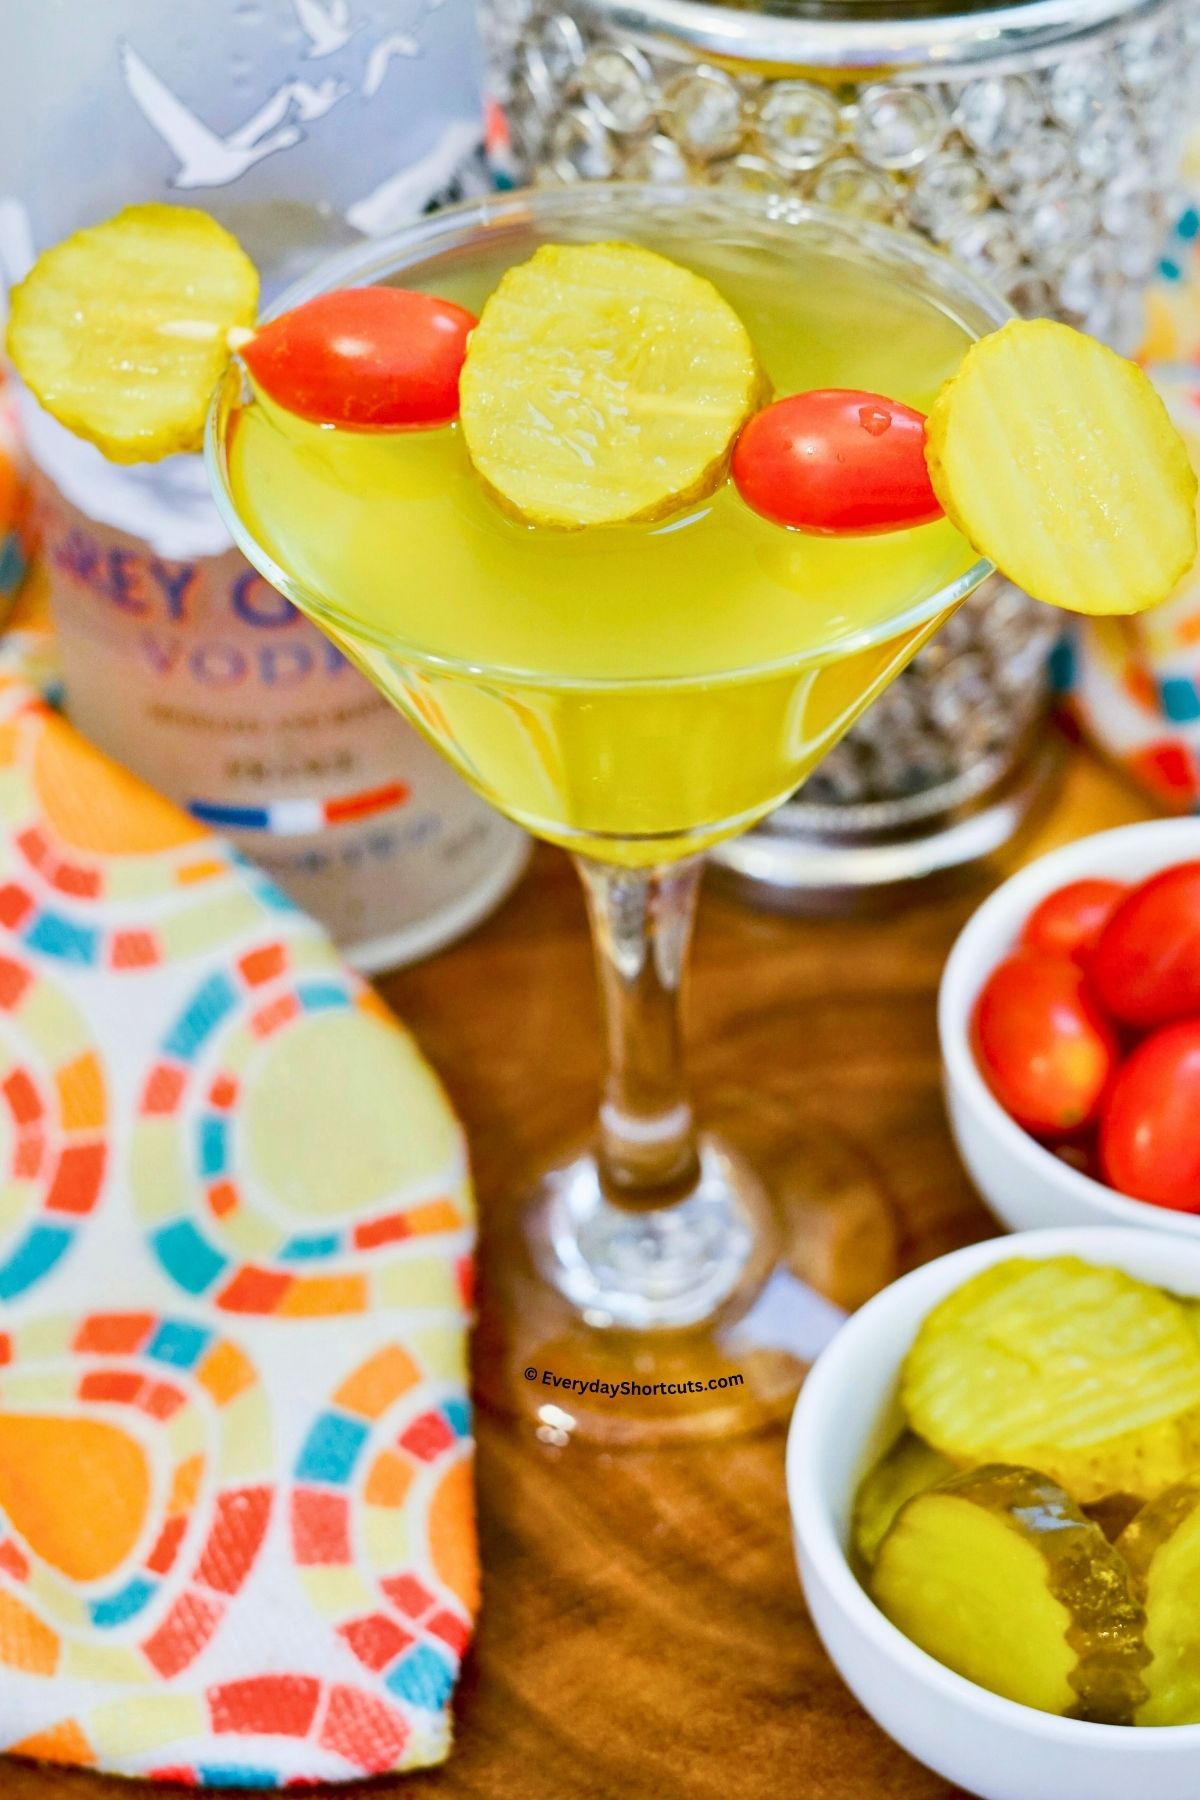 Dill Pickle Martini in a martini glass